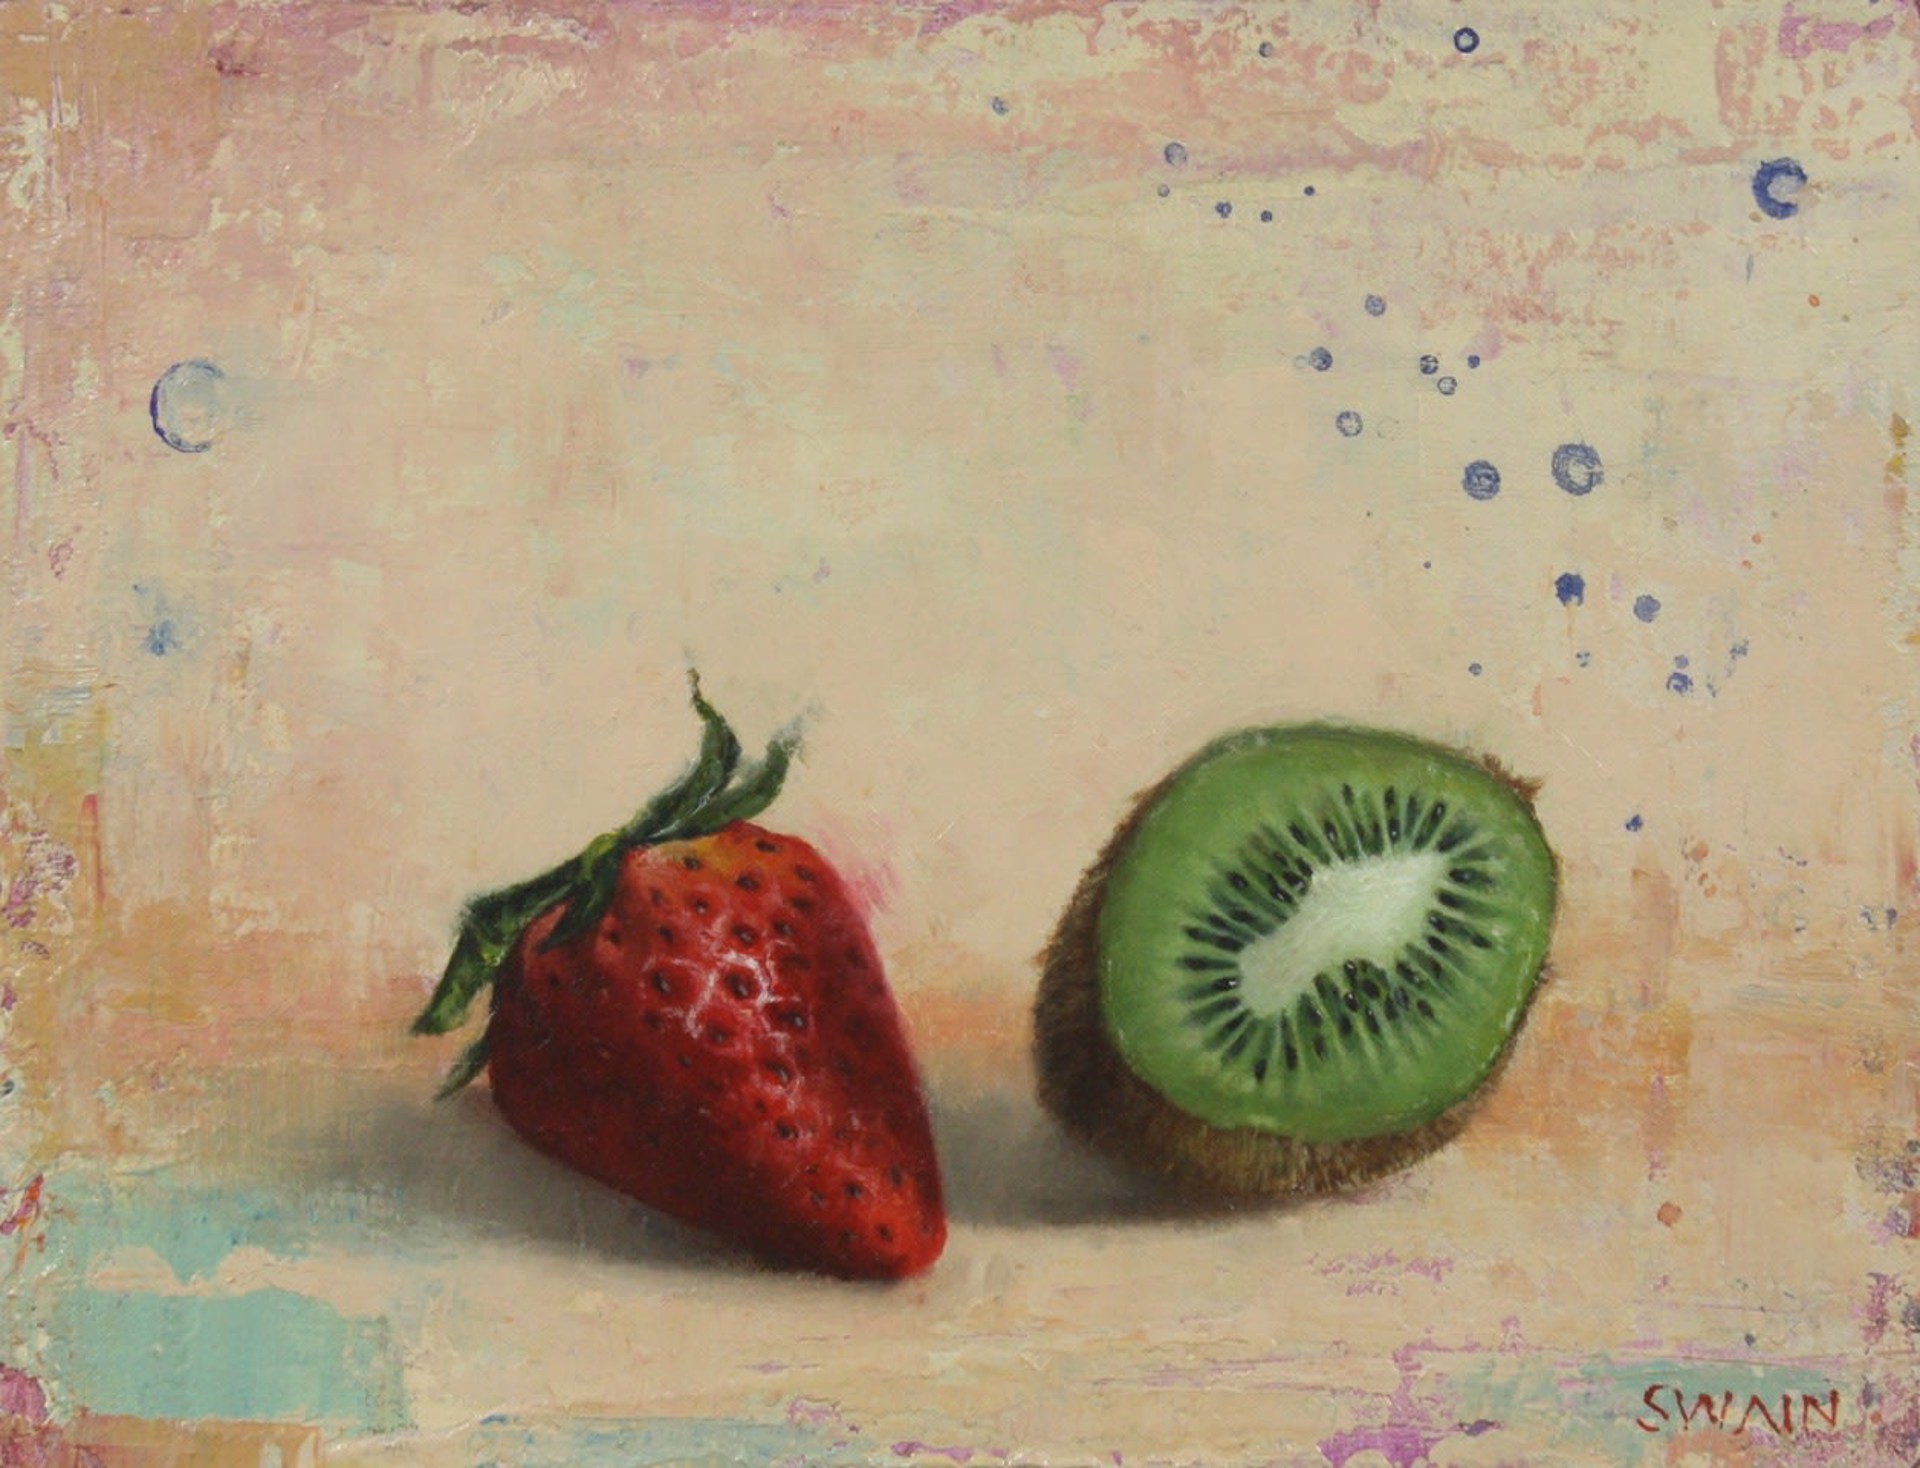 Strawberry Kiwi by Tyler Swain